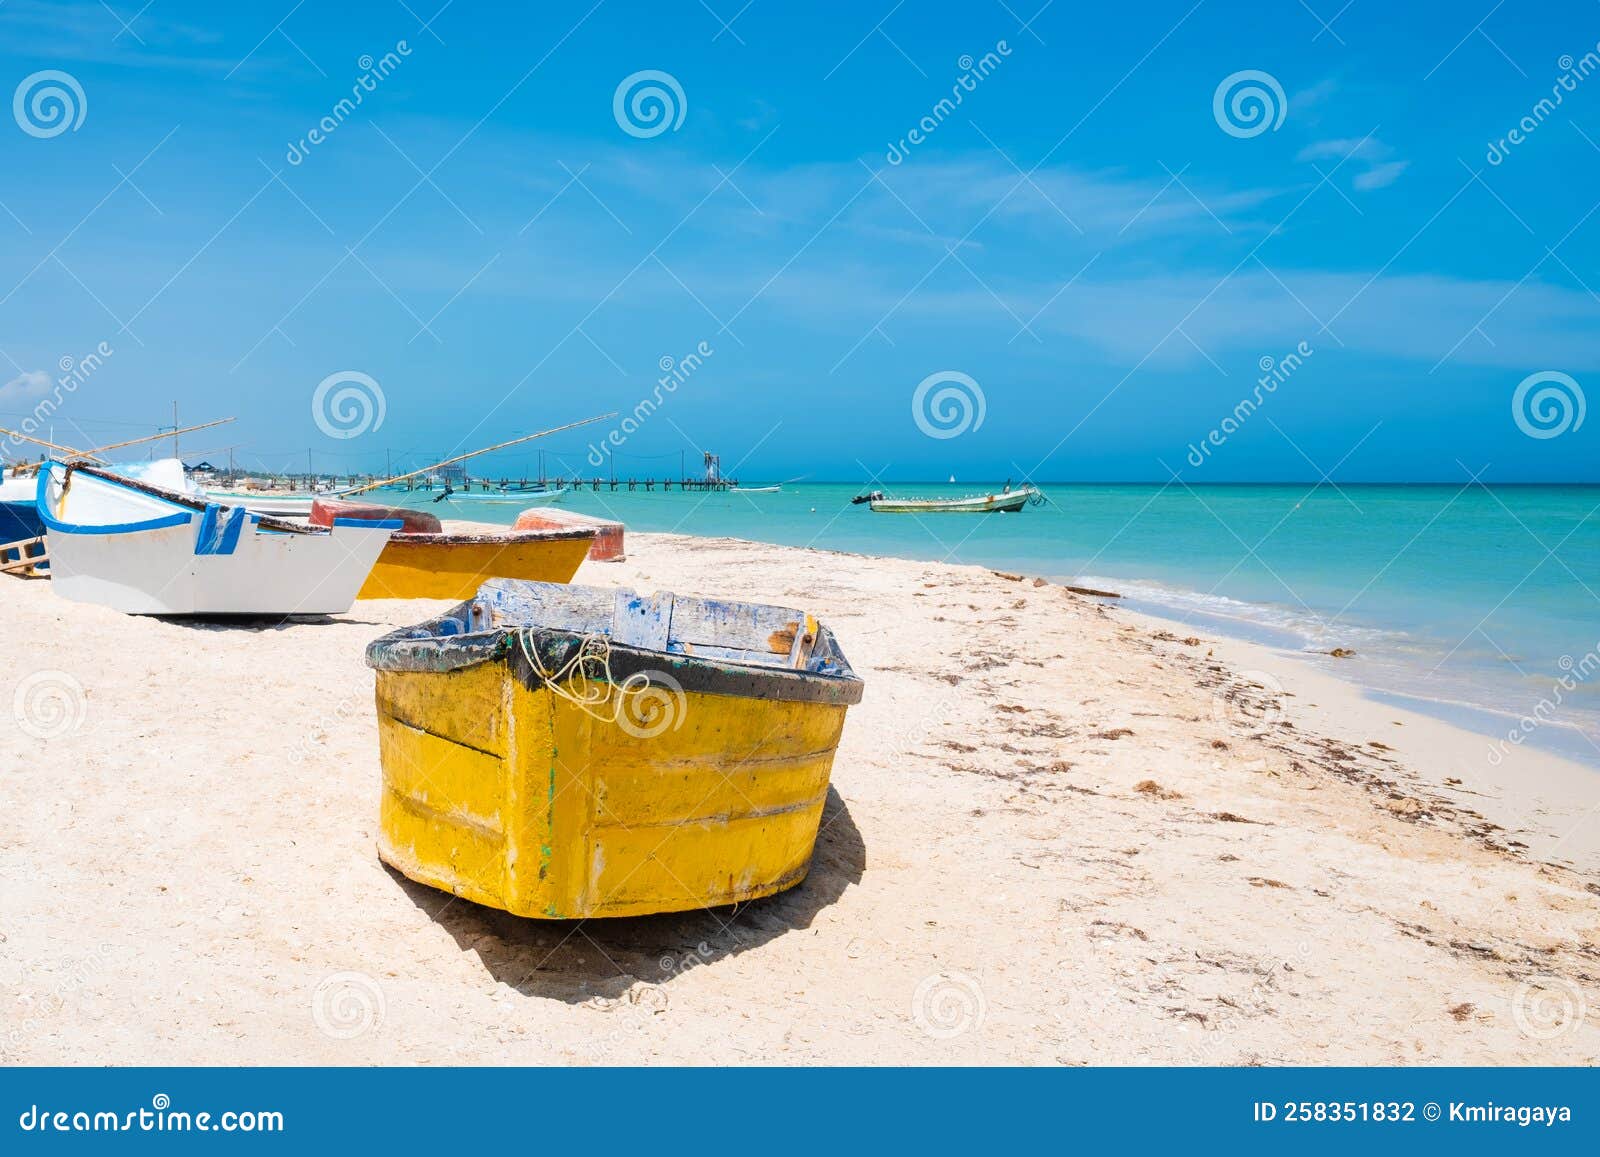 boats at the beach of progreso near merida in mexico